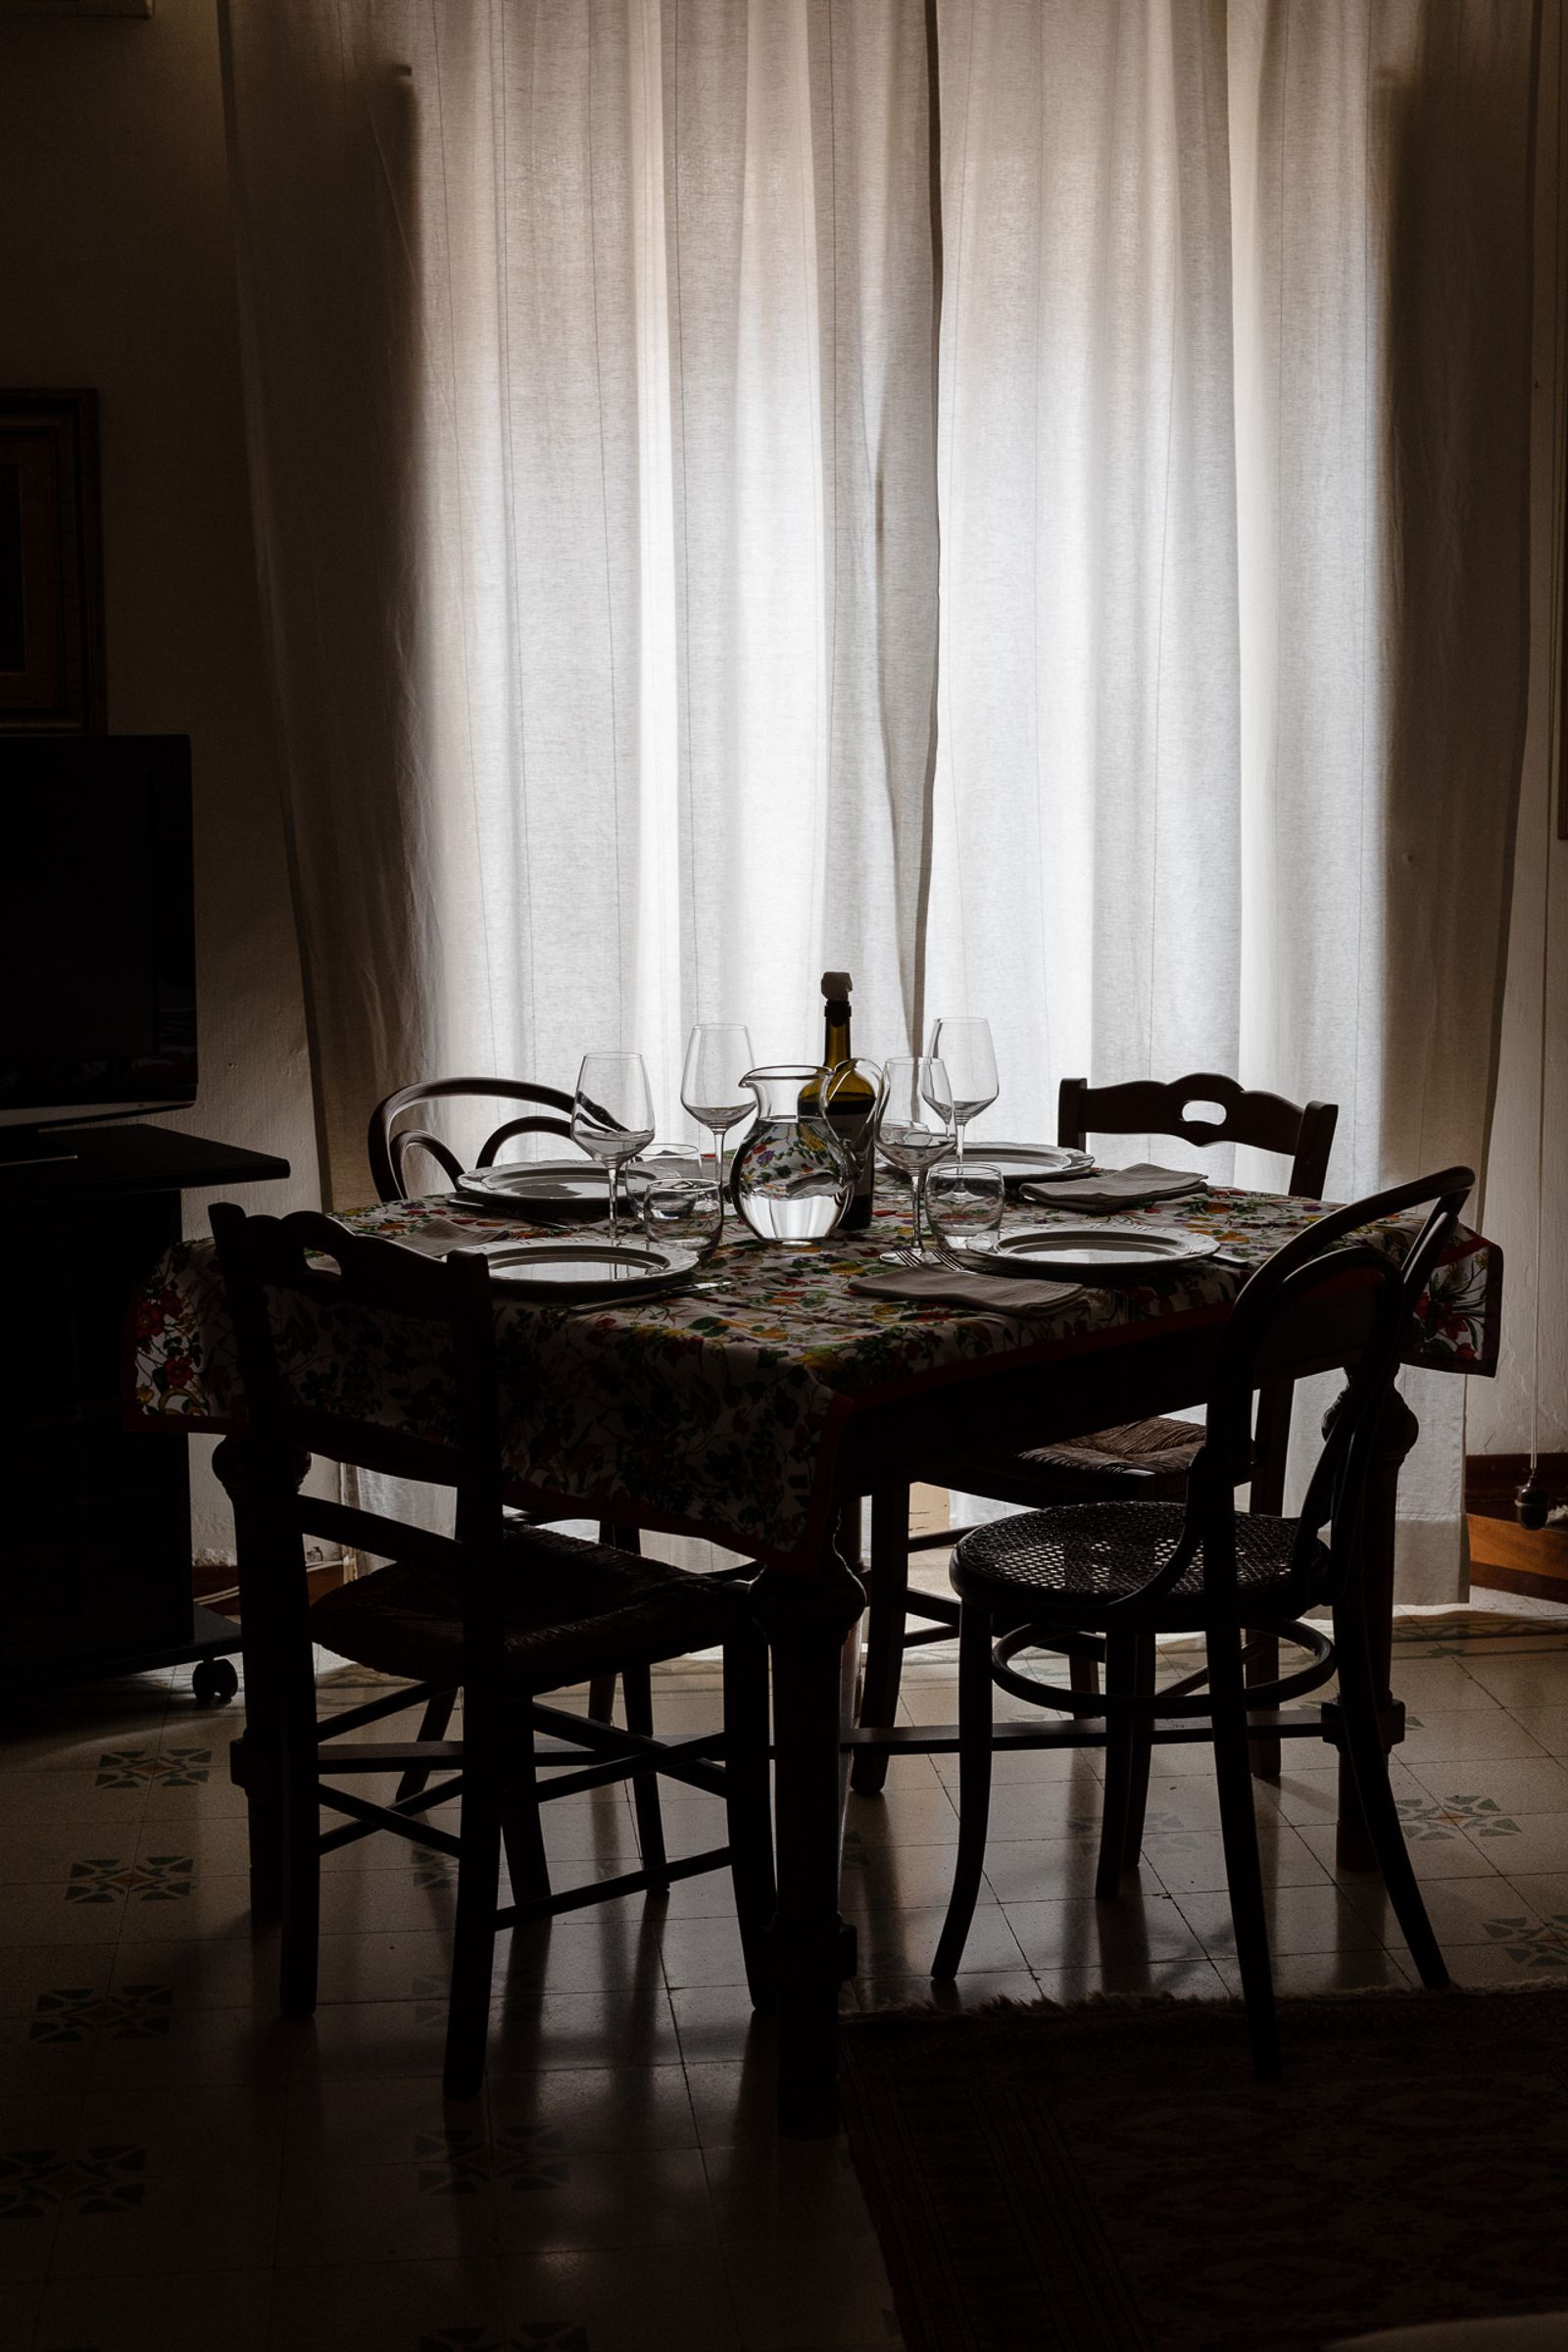 © Iona Dutz - L'Incontro a tavola, lunch at Mariella's home